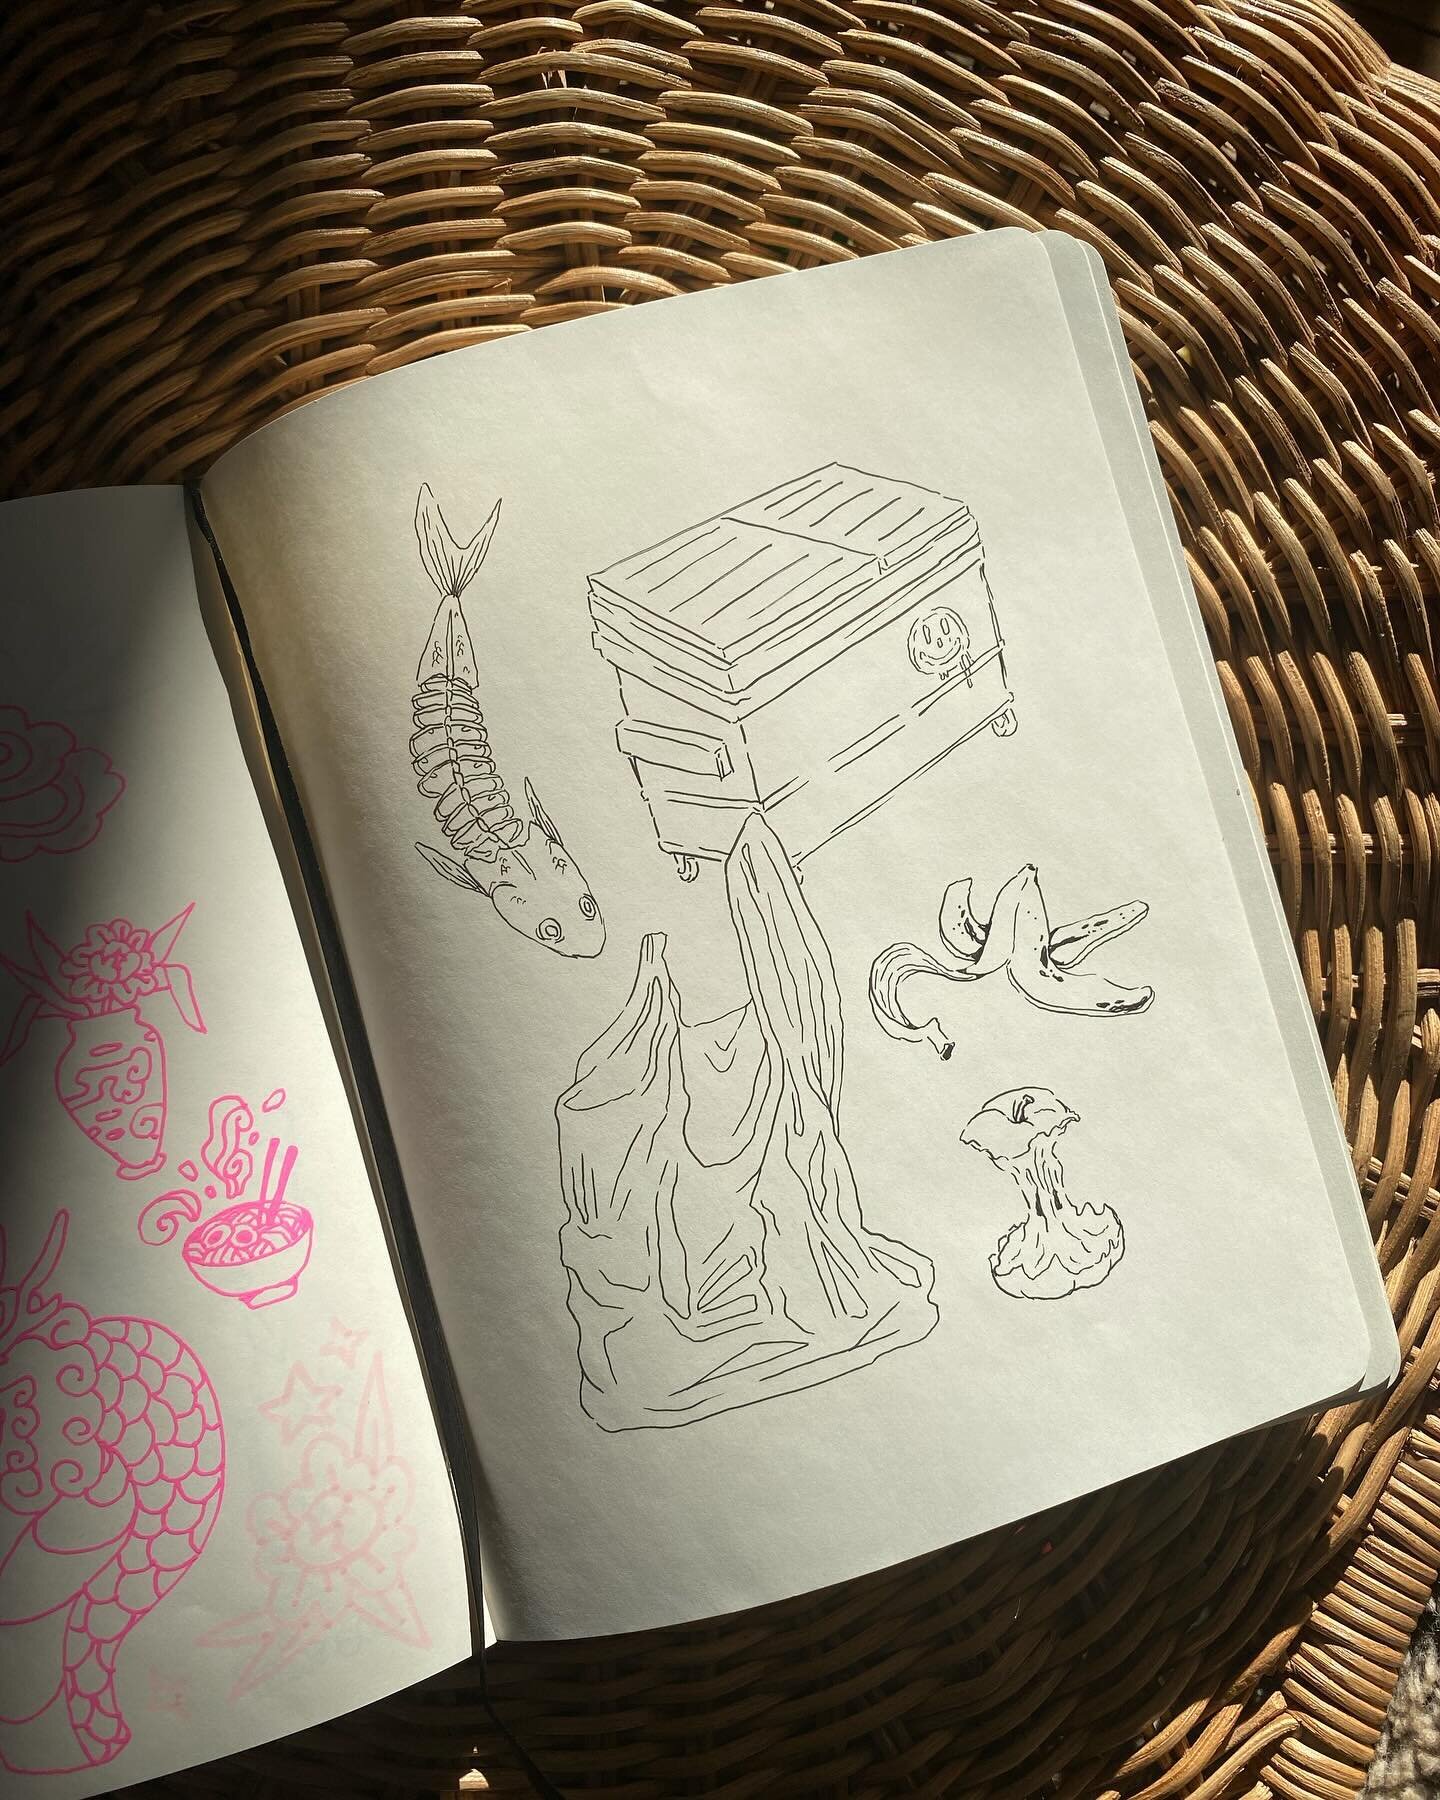 Sketchbook dumpyyy 😌 obsessed with the garbage page ngl 🗑️🩶 swipe for close ups!!! 

#sketchbook #sketchbookdump #sketchbookdoodles